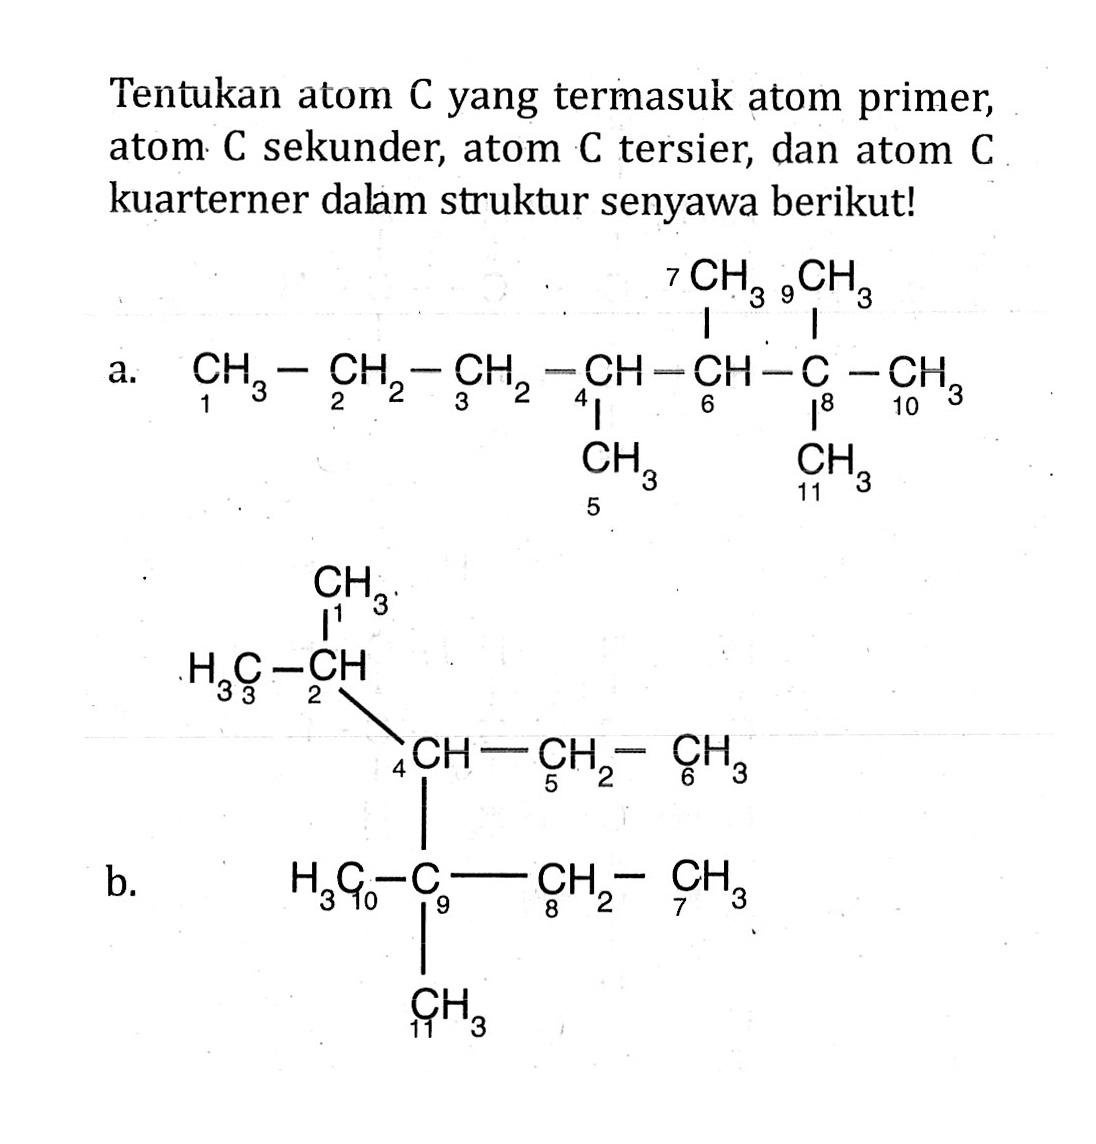 Tentukan atom C yang termasuk atom primer, atom C sekunder, atom C tersier, dan atom C kuarterner dalam struktur senyawa berikut! a. 7 CH3 9 CH3 1 CH3 - 2 CH2 - 3 CH2 - 4 CH - 6 CH - 8 C - 10 CH3 - 5 CH3 11 CH3 b. 1 CH3 3 CH3 - 2 CH 4 CH - 5 CH2 - 6 CH3 10 CH3 - 9 C - 8 CH2 - 7 CH3 11 CH3